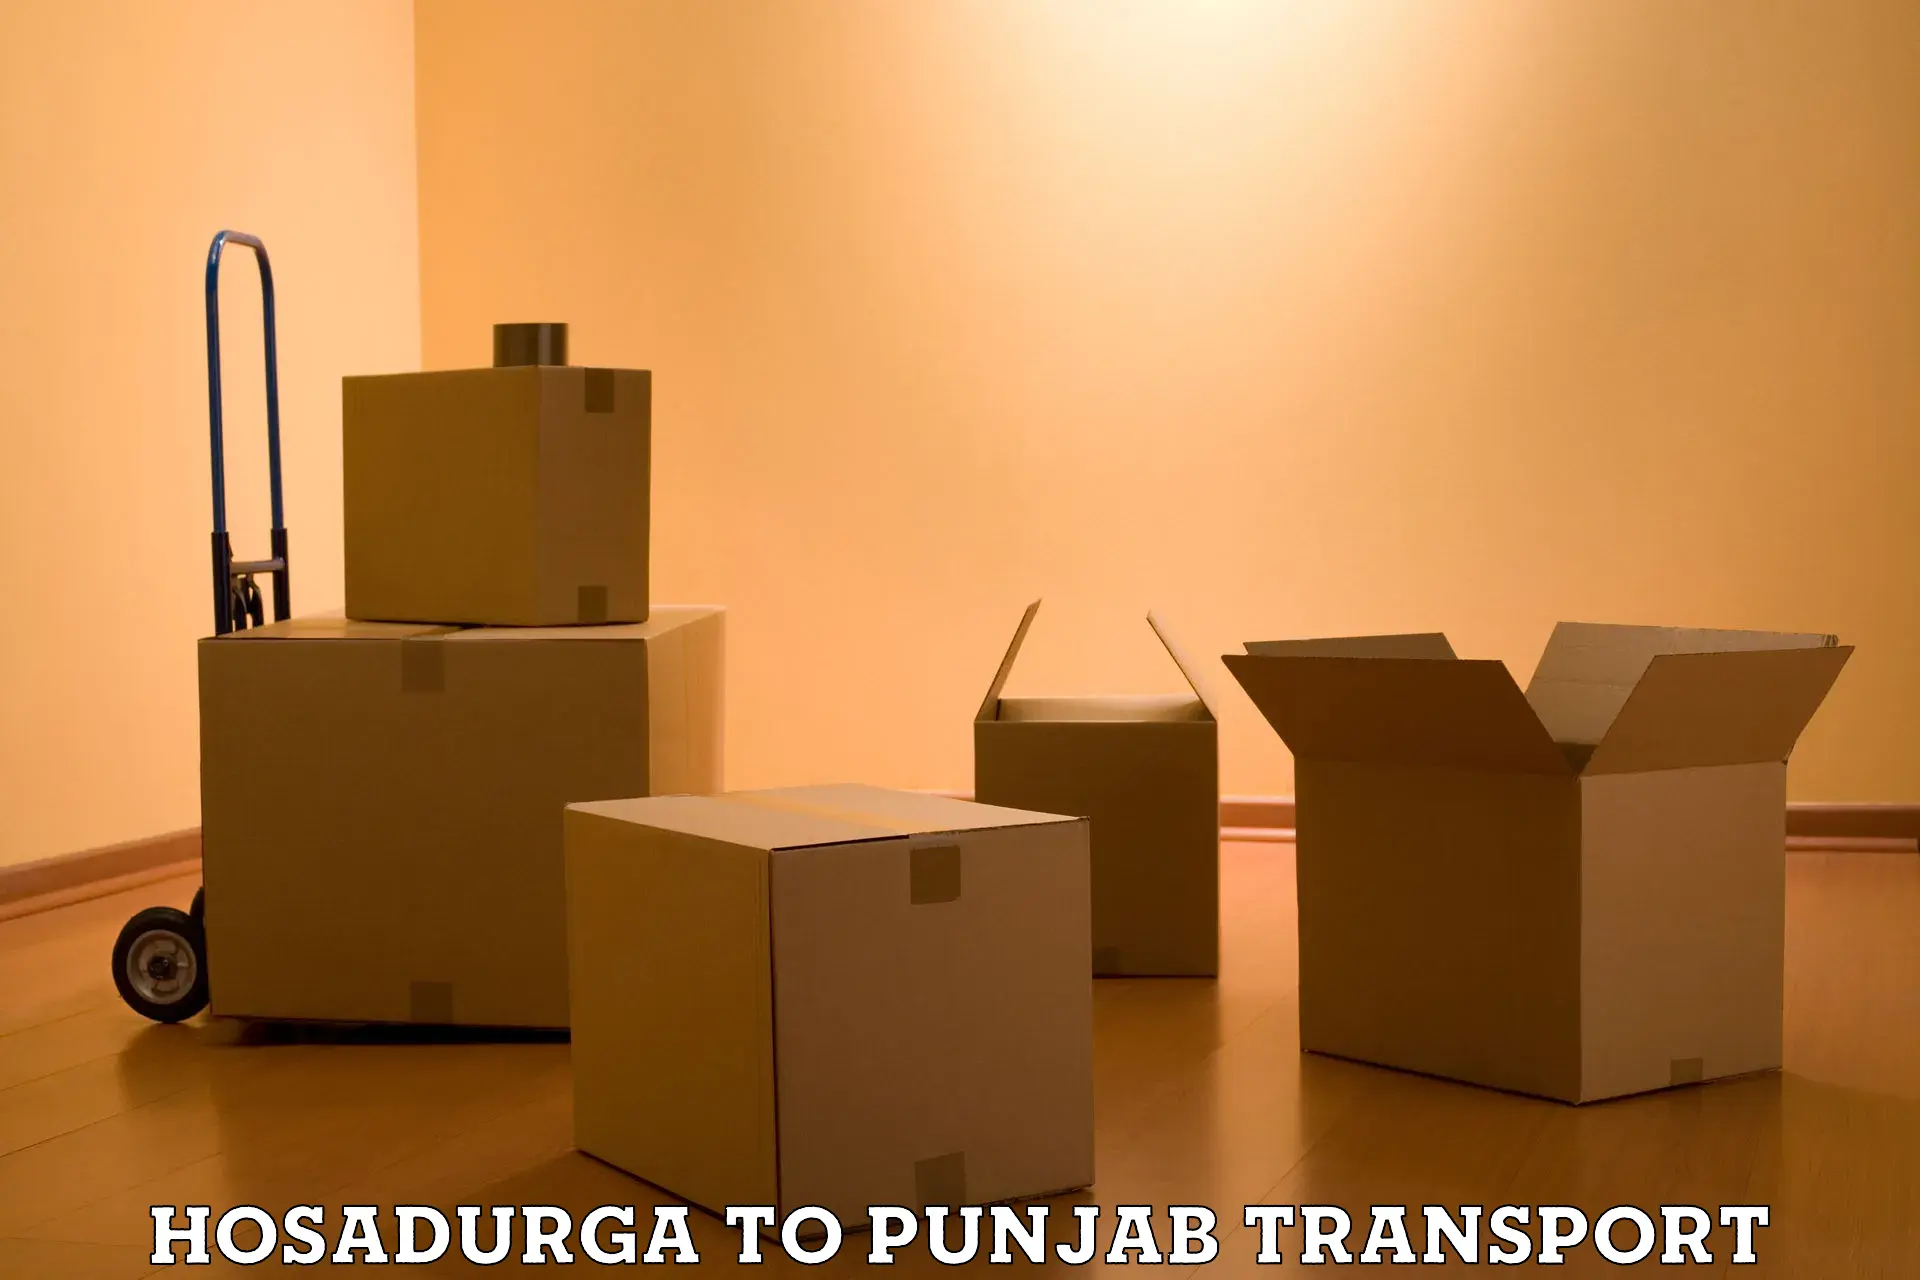 Bike shipping service Hosadurga to Punjab